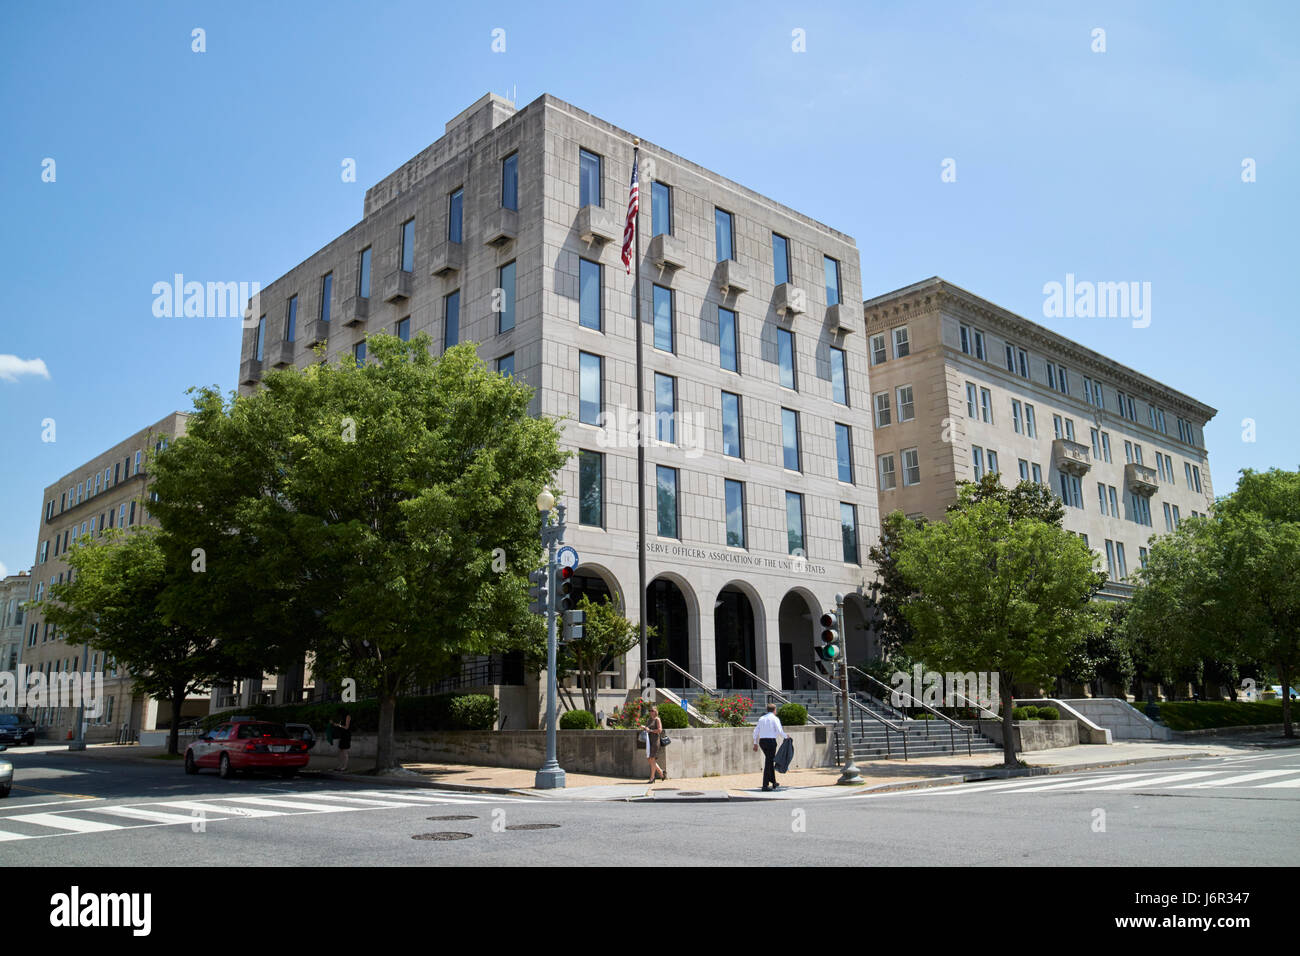 Association des officiers de réserve d'Amérique minuteman memorial building Washington DC USA Banque D'Images